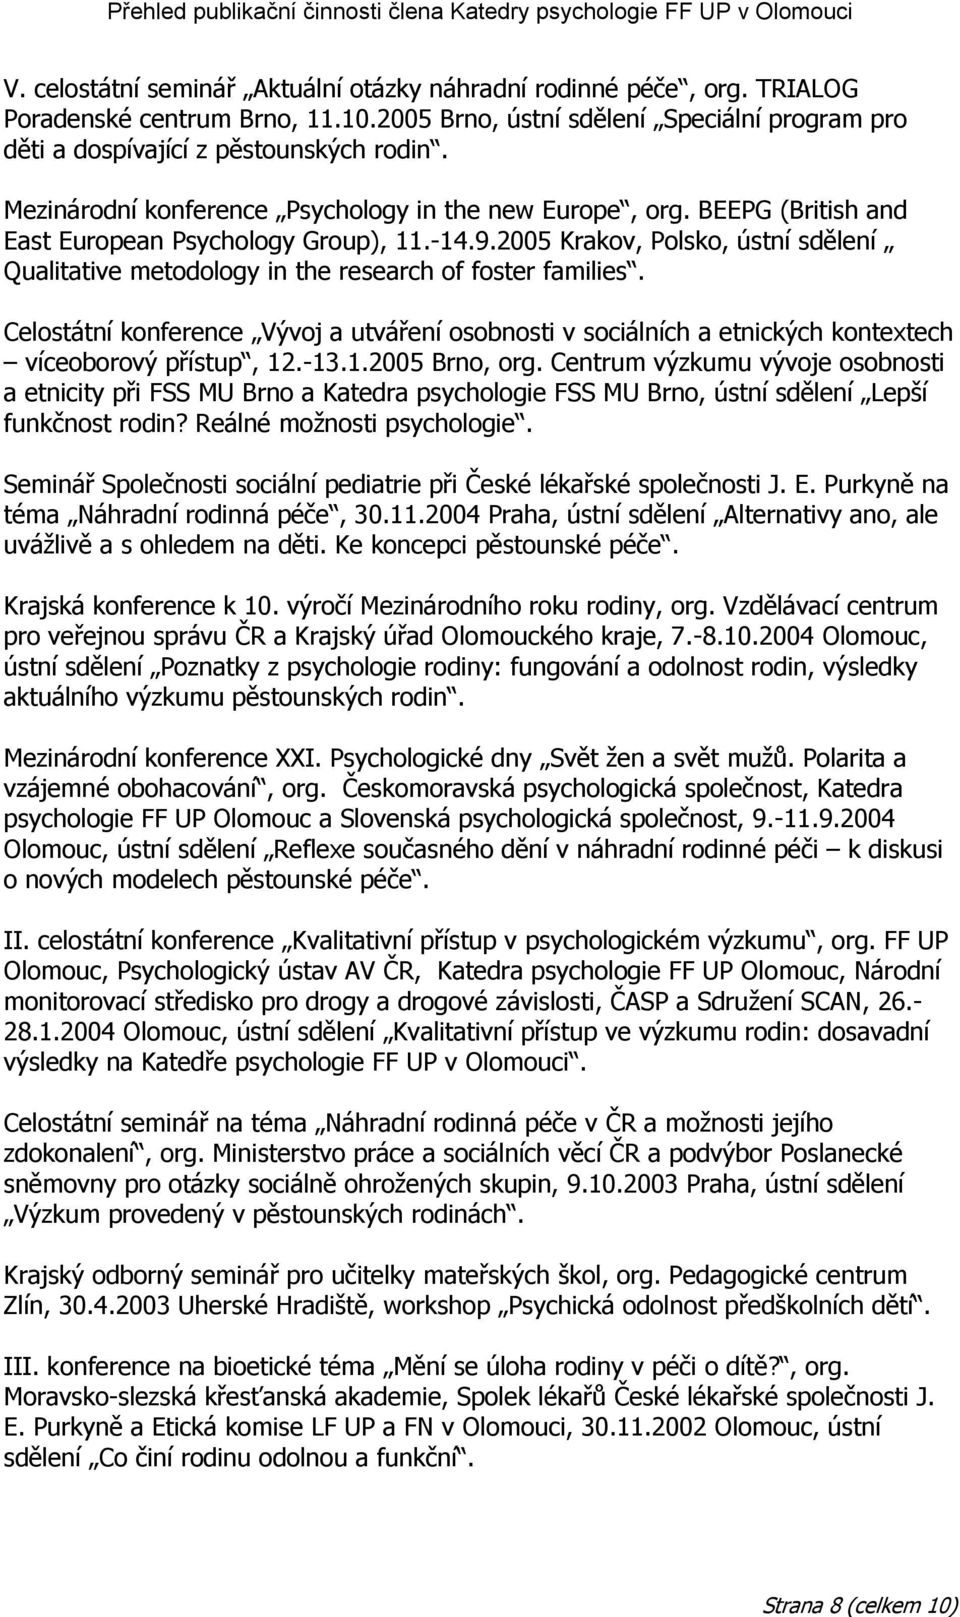 2005 Krakov, Polsko, ústní sdělení Qualitative metodology in the research of foster families.